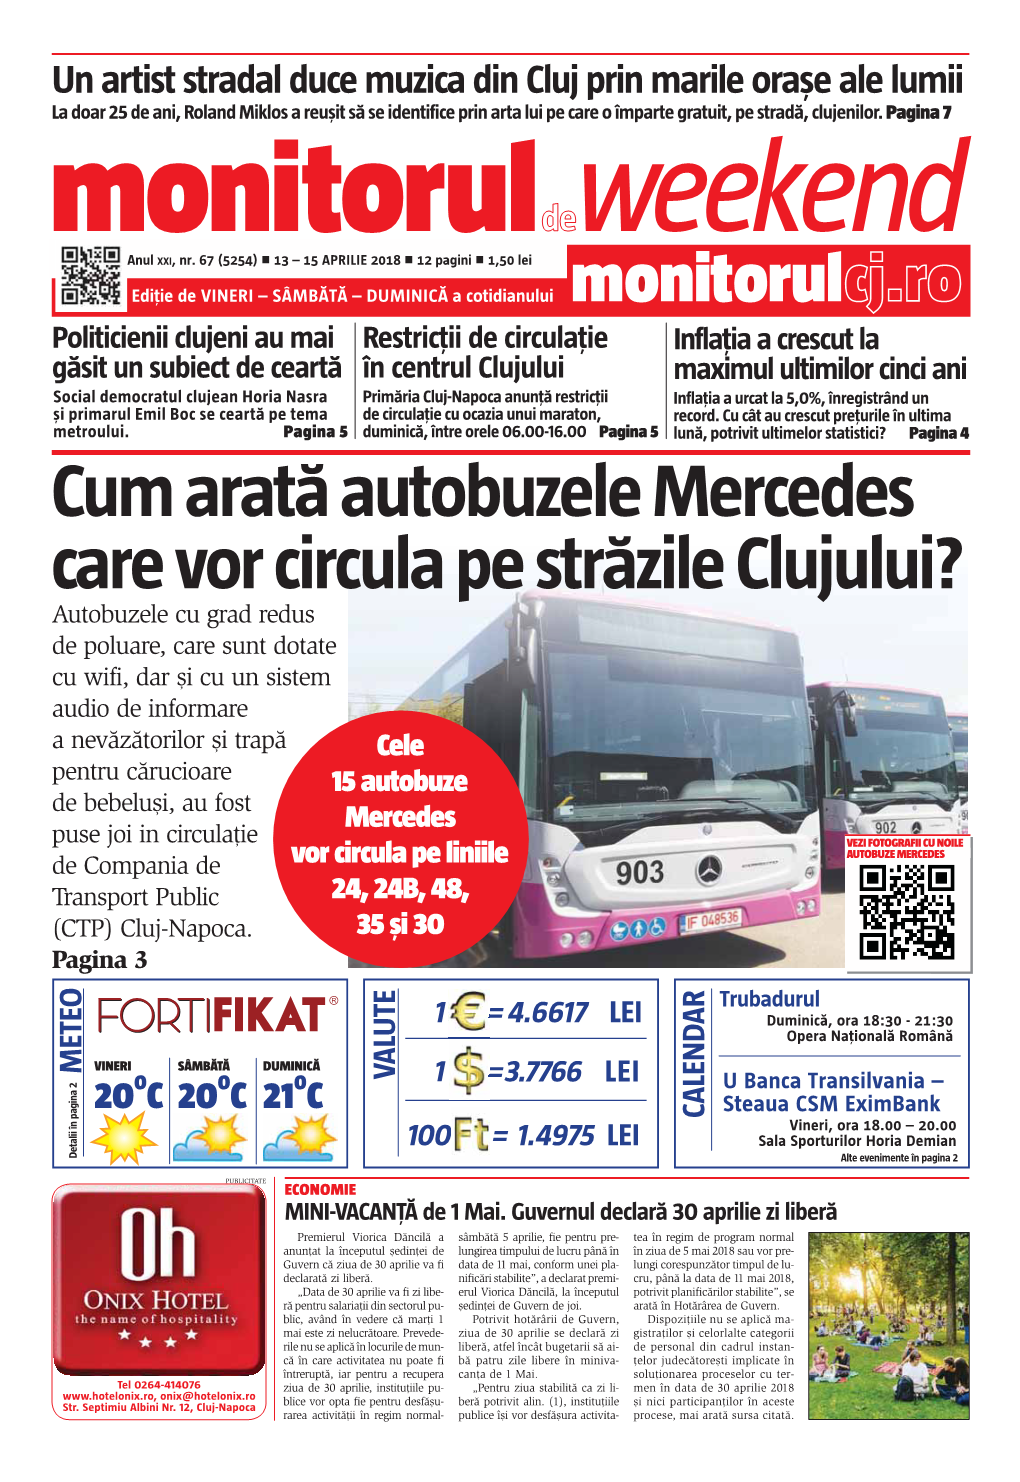 Cum Arată Autobuzele Mercedes Care Vor Circula Pe Străzile Clujului?